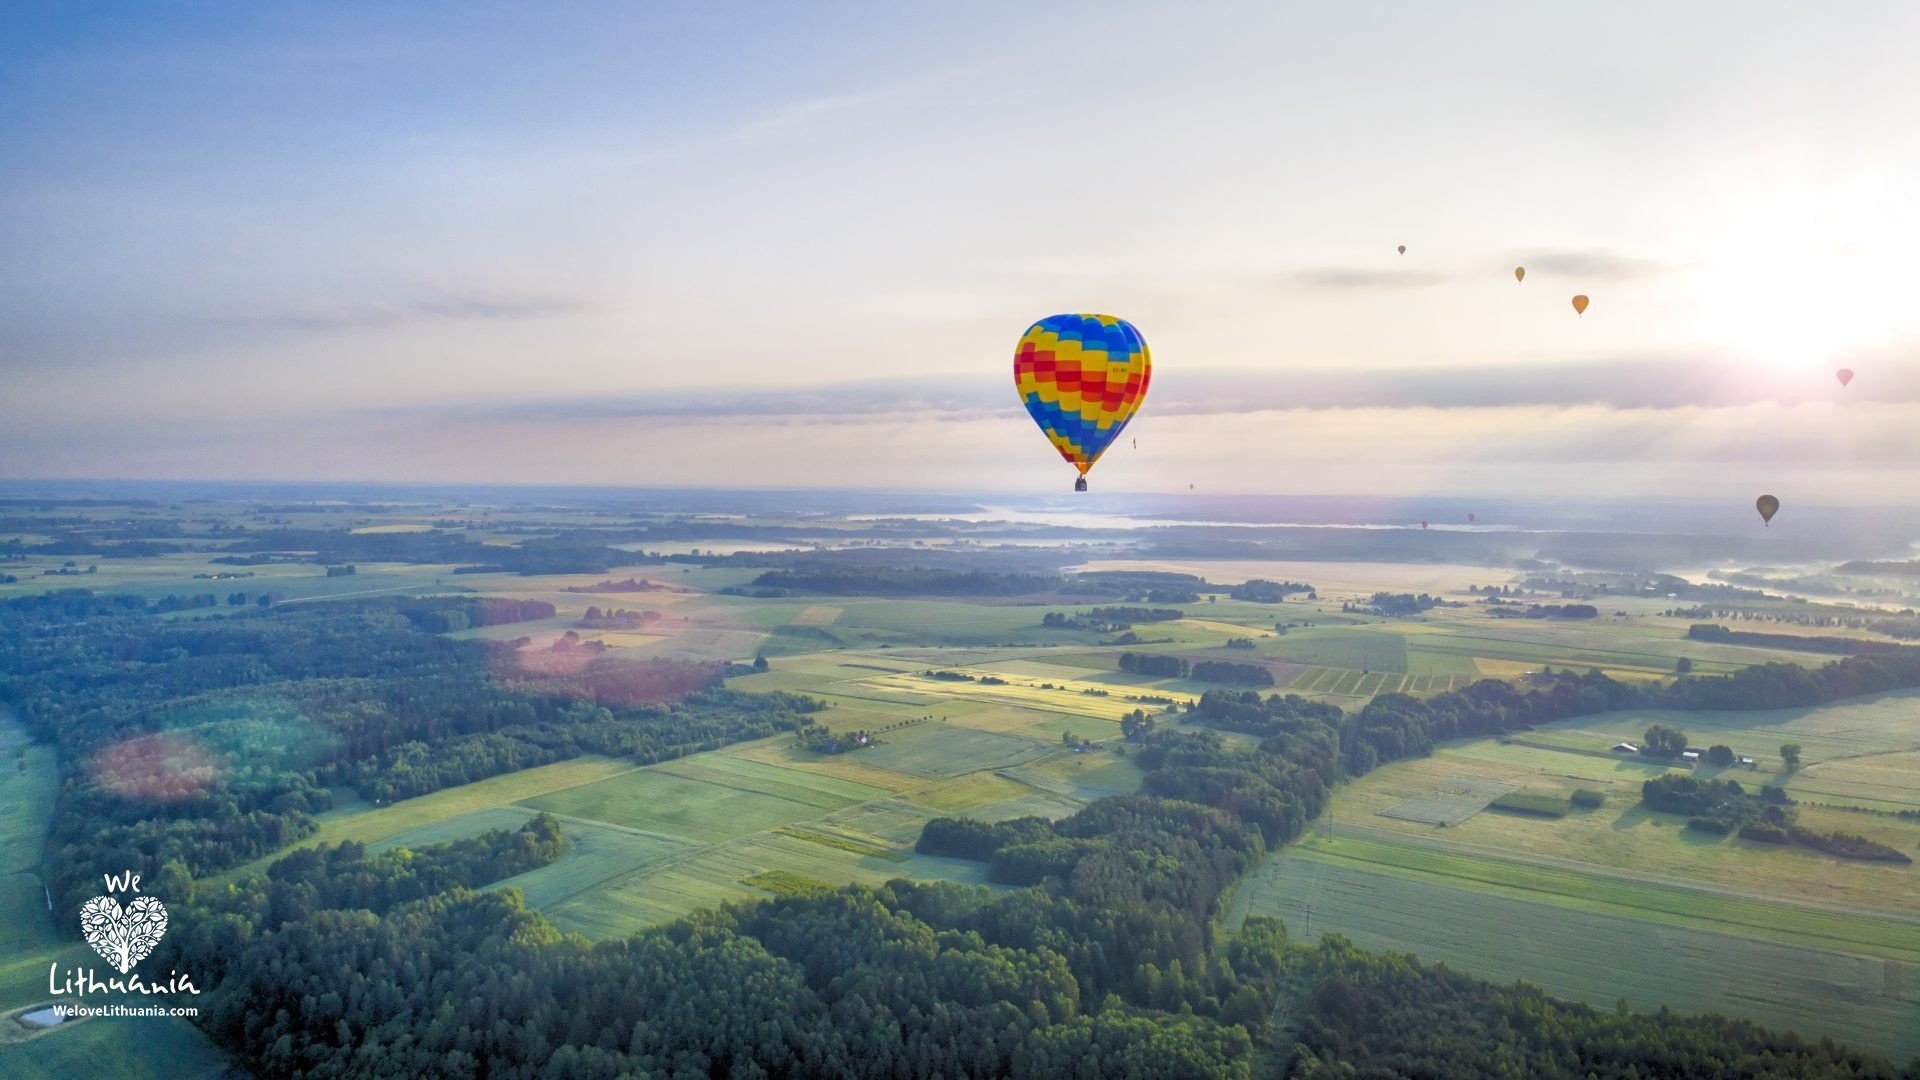 Oro balionų skrydis virš Nemuno ties Birštonu anksti ryte